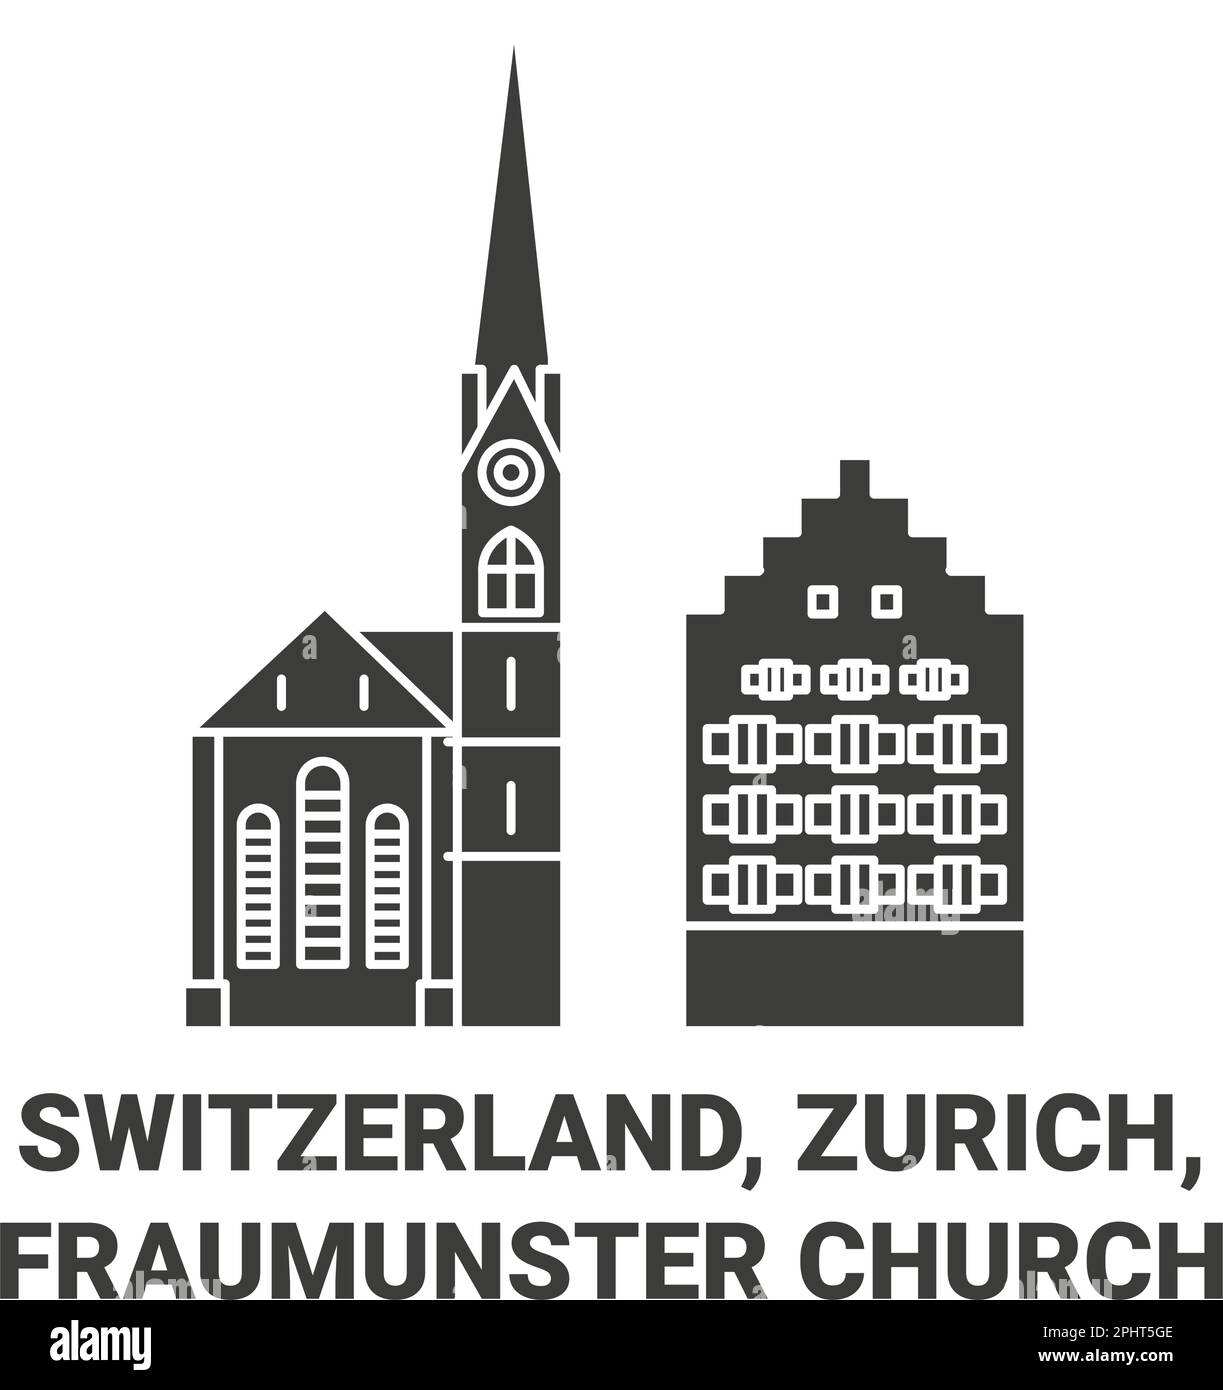 Suisse, Zurich, l'église Fraumunster Voyage repère illustration vectorielle Illustration de Vecteur